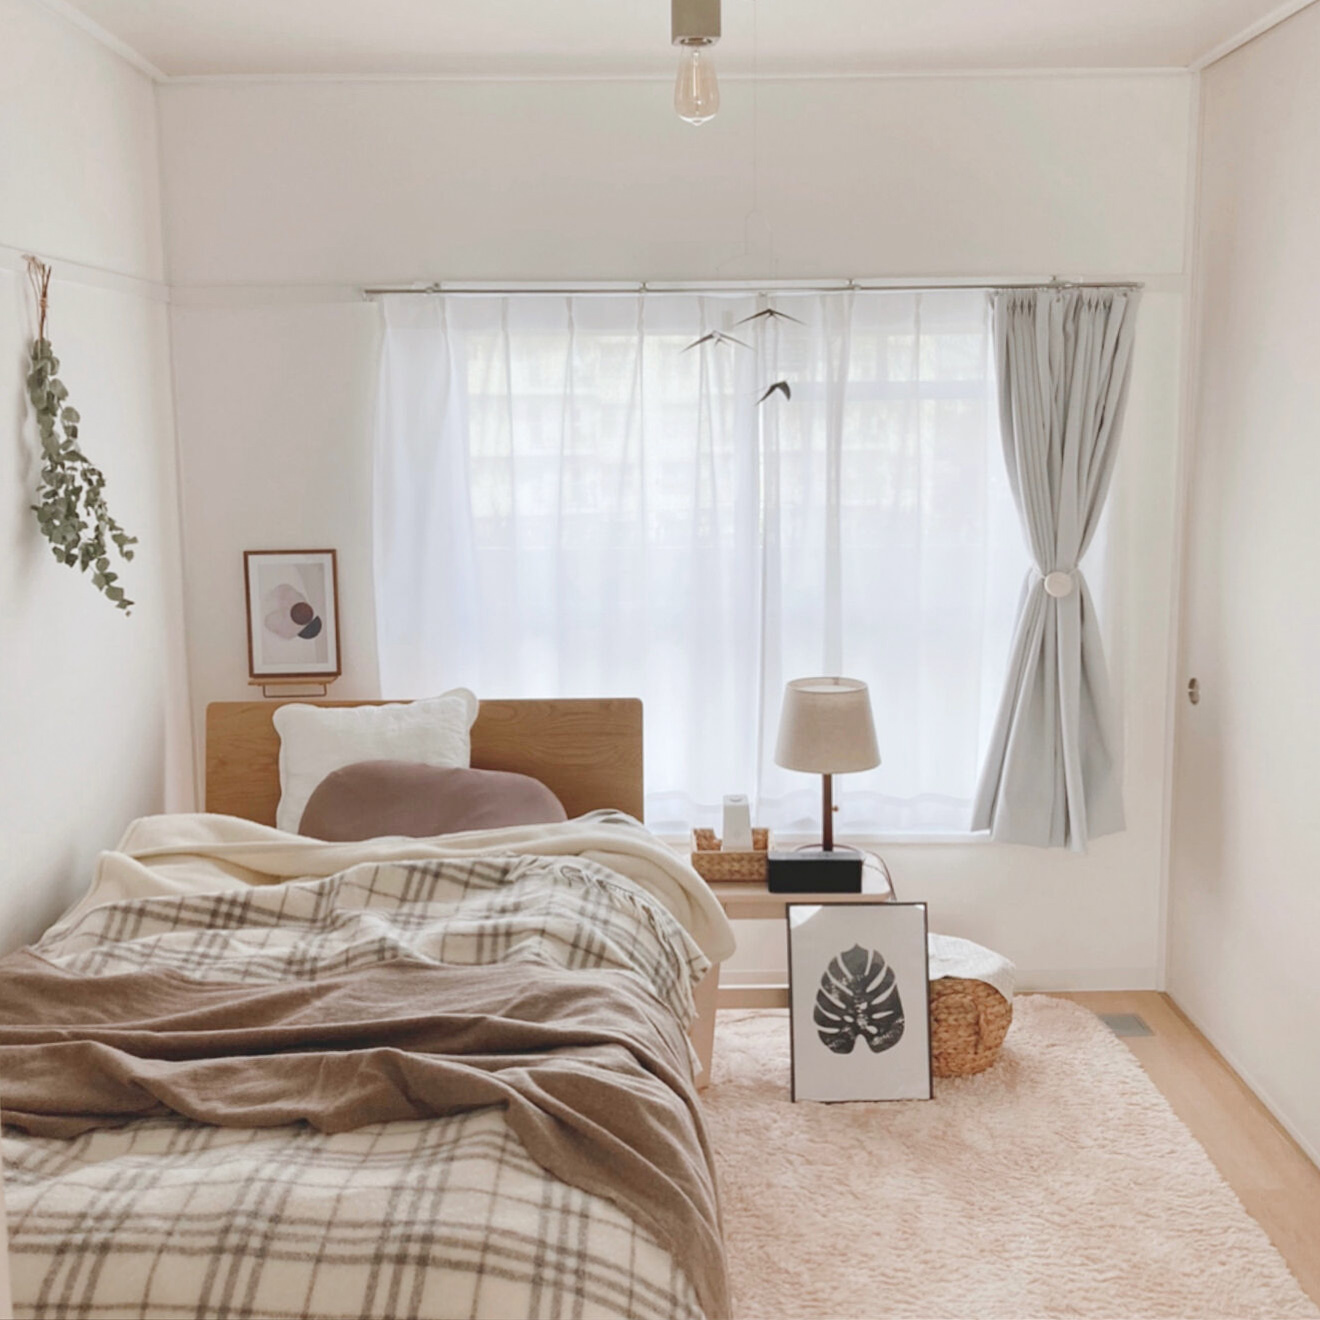 ベッドルームは、あえてベッド以外のものはおかずに、贅沢に空間を利用。落ち着いて過ごせる空間になっています。 （このお部屋はこちら https://www.goodrooms.jp/journal/?p=56160）